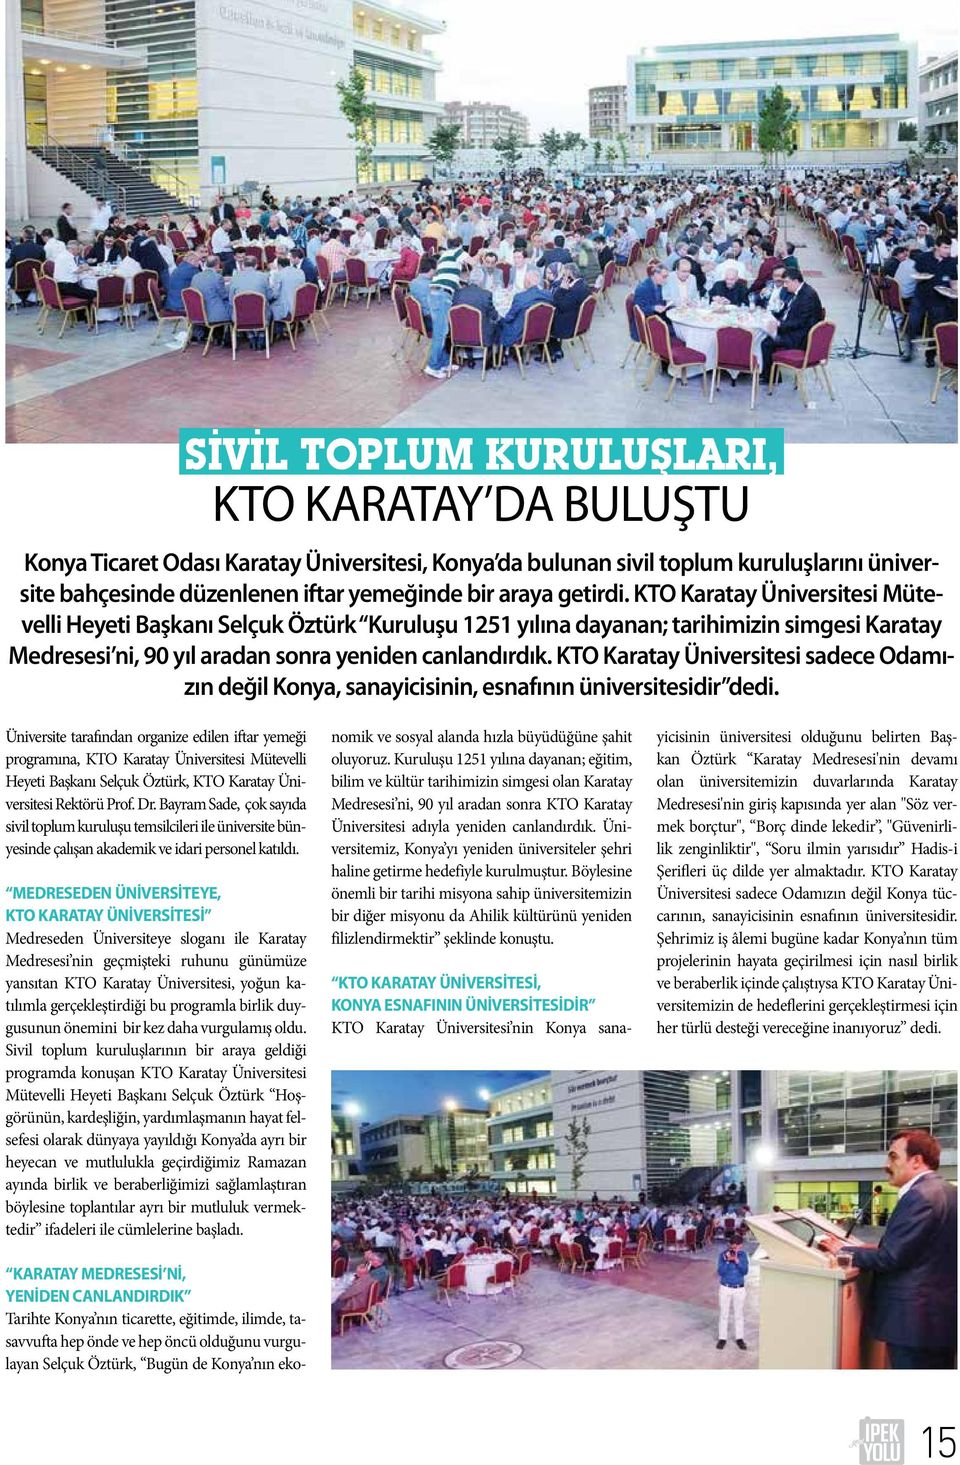 KTO Karatay Üniversitesi sadece Odamızın değil Konya, sanayicisinin, esnafının üniversitesidir dedi.